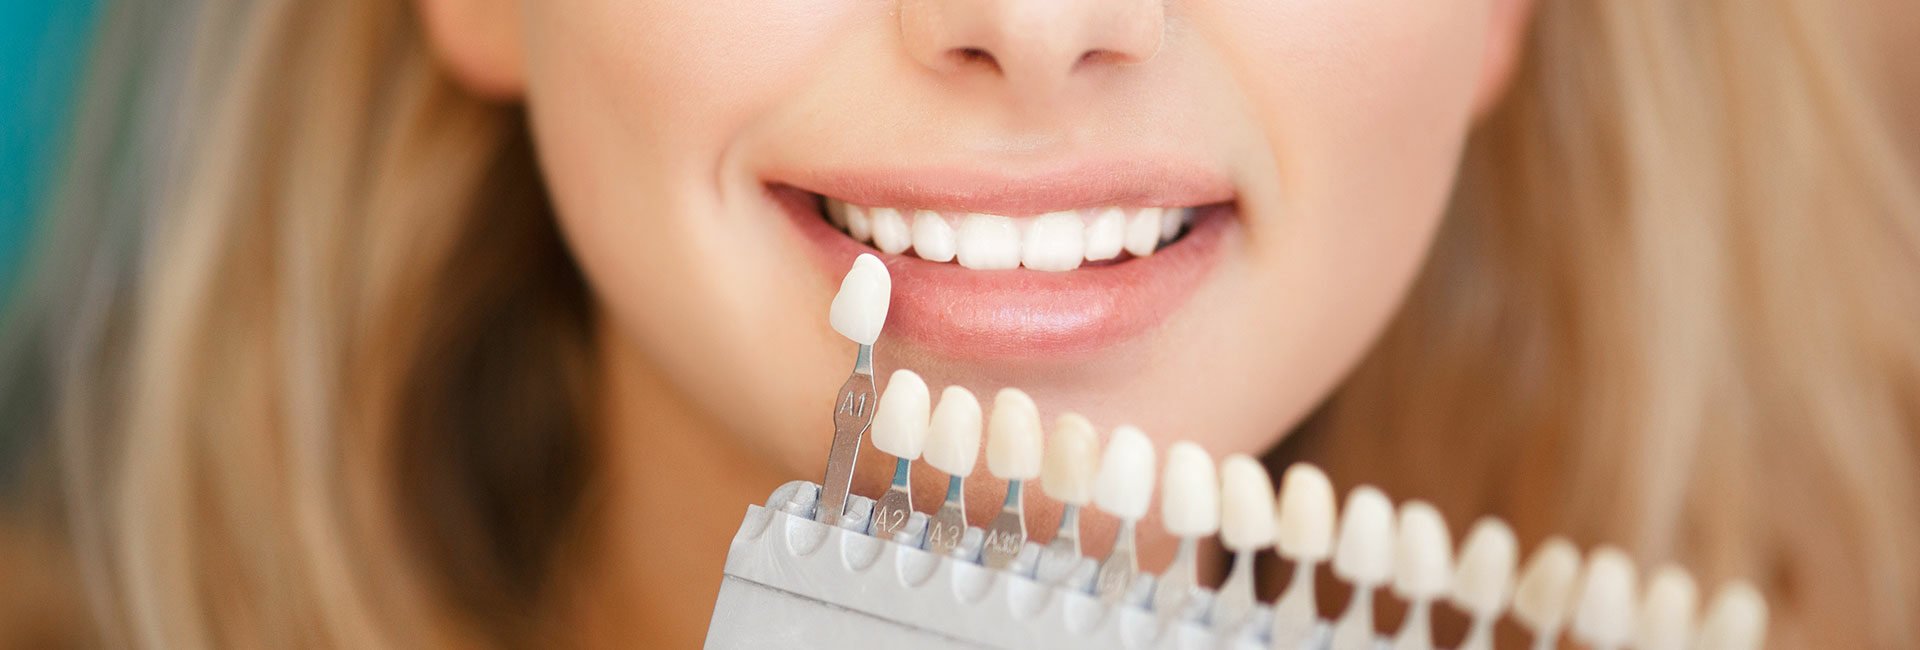 bei lächelnder Patientin wird die richtige Zahnfarbe mit einer Zahnfarben-Tabelle bestimmt 